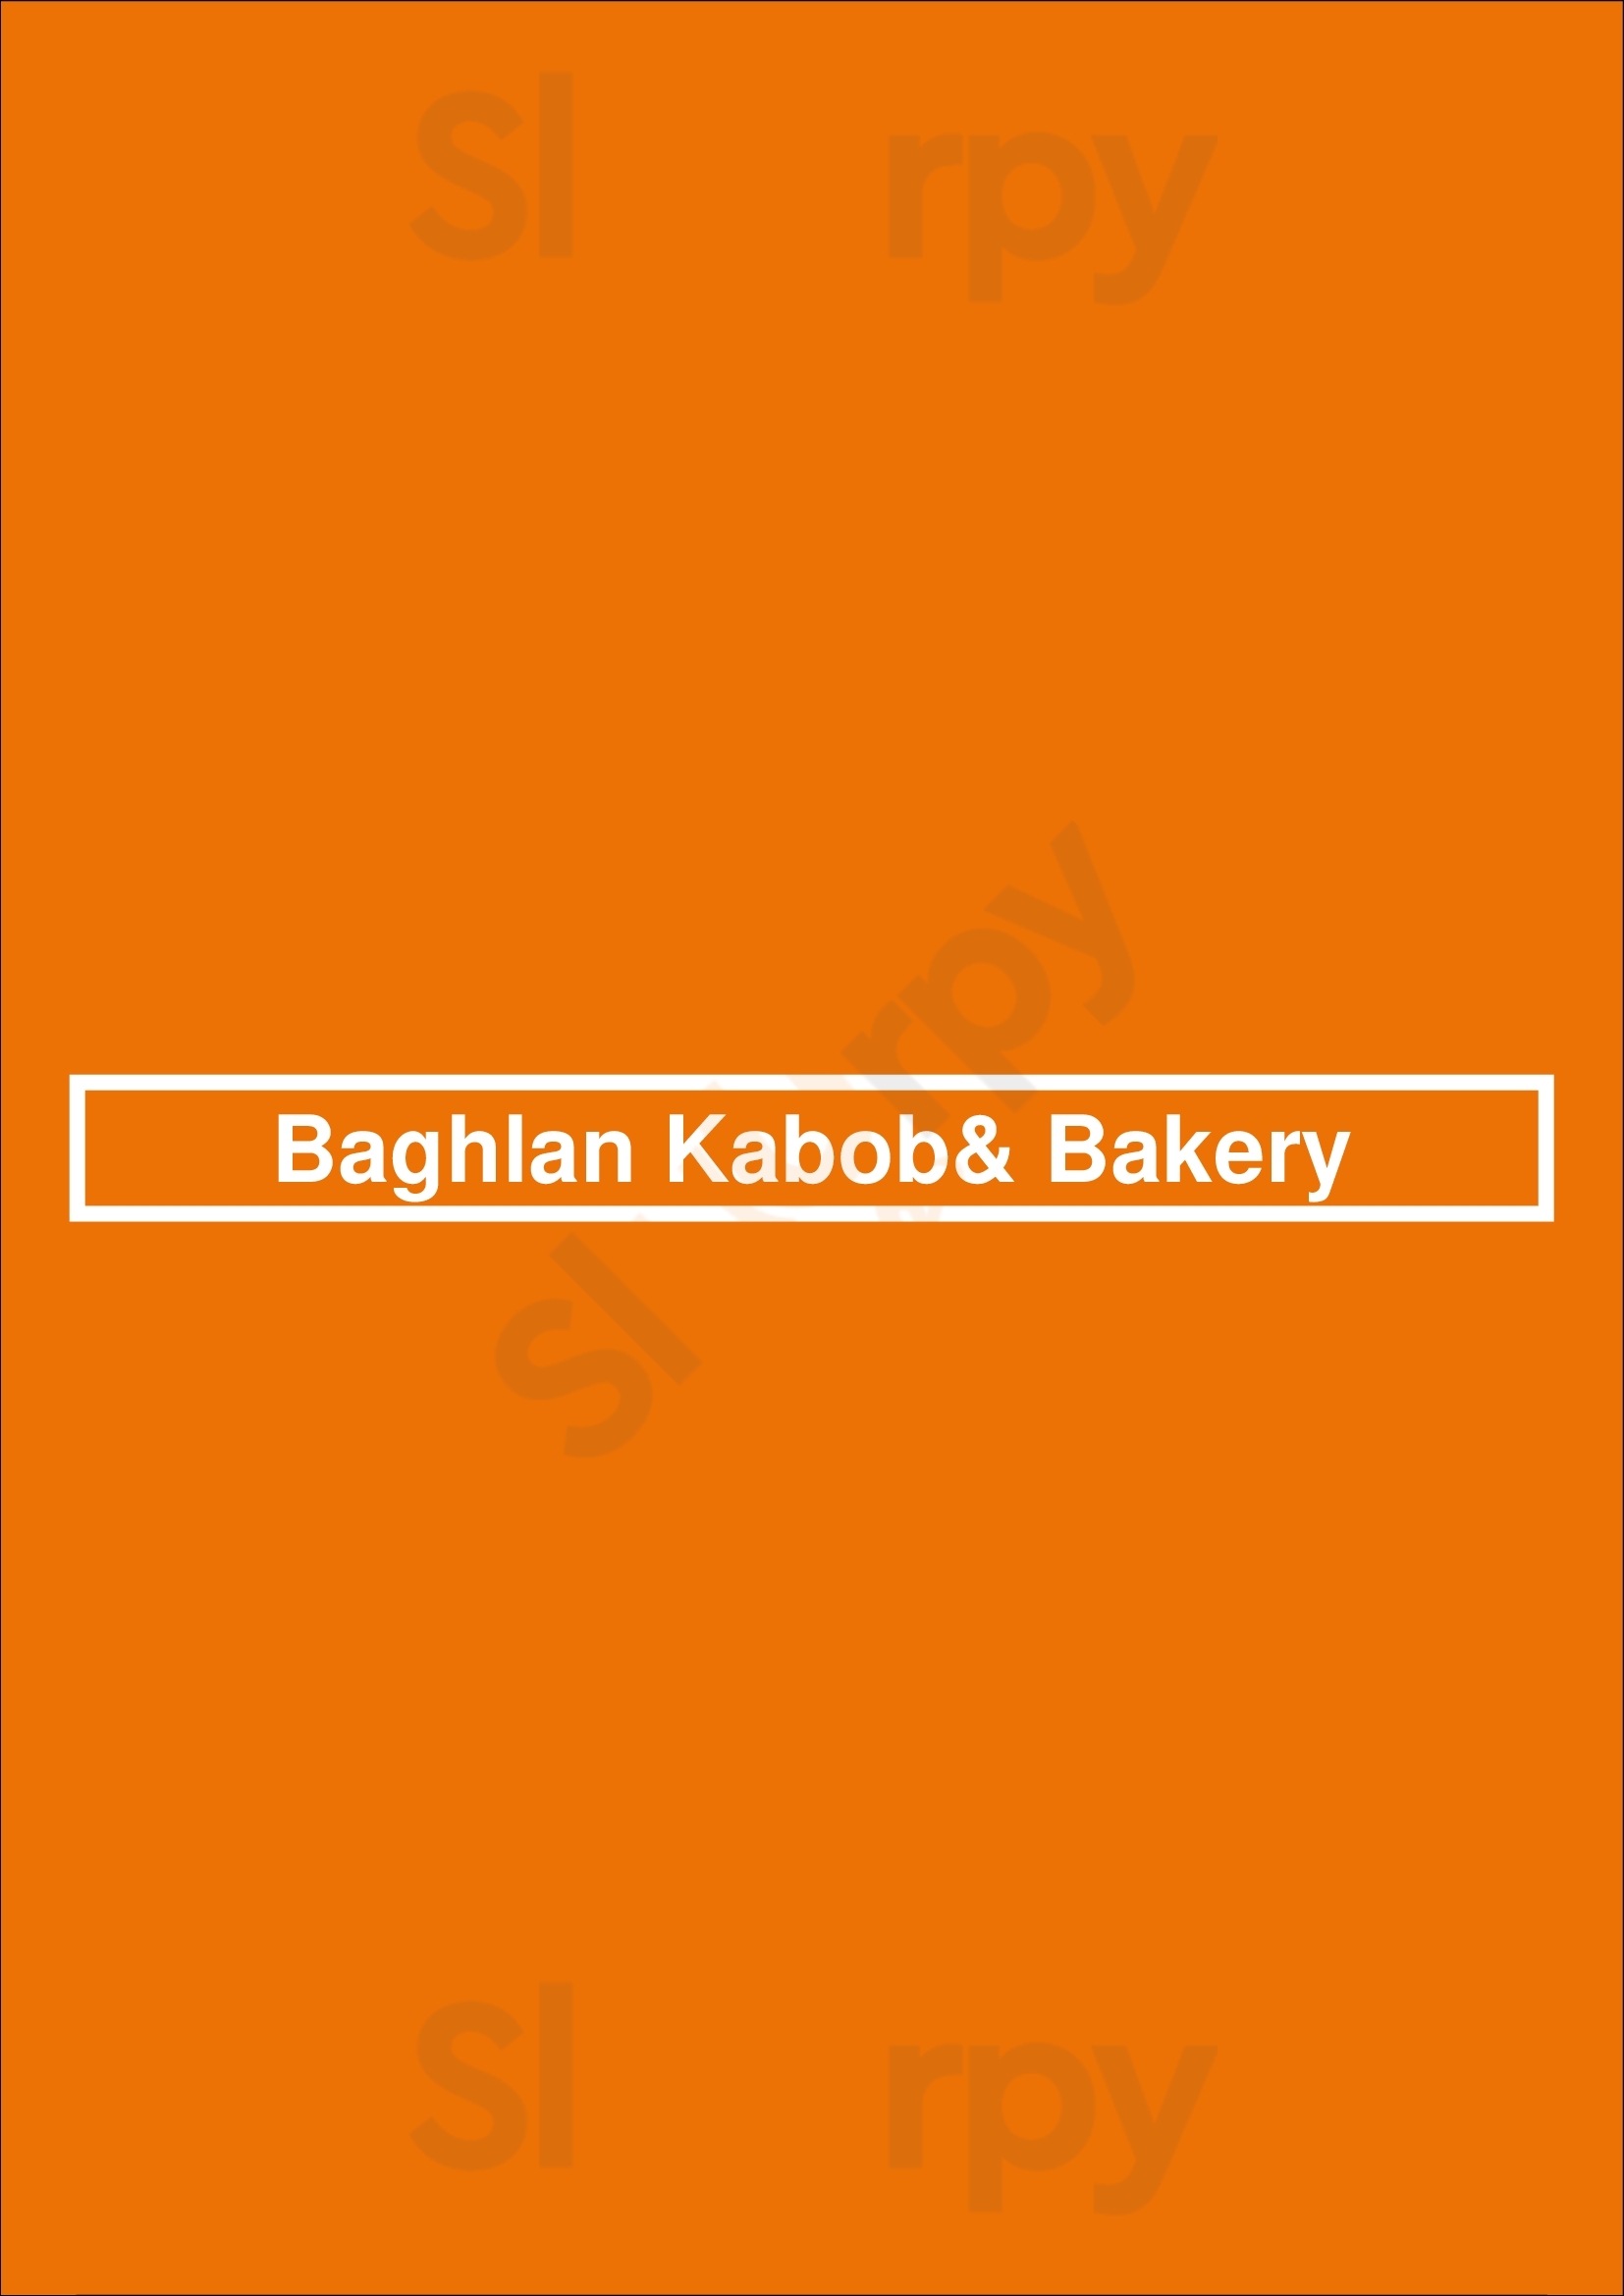 Baghlan Kabob& Bakery Brampton Menu - 1